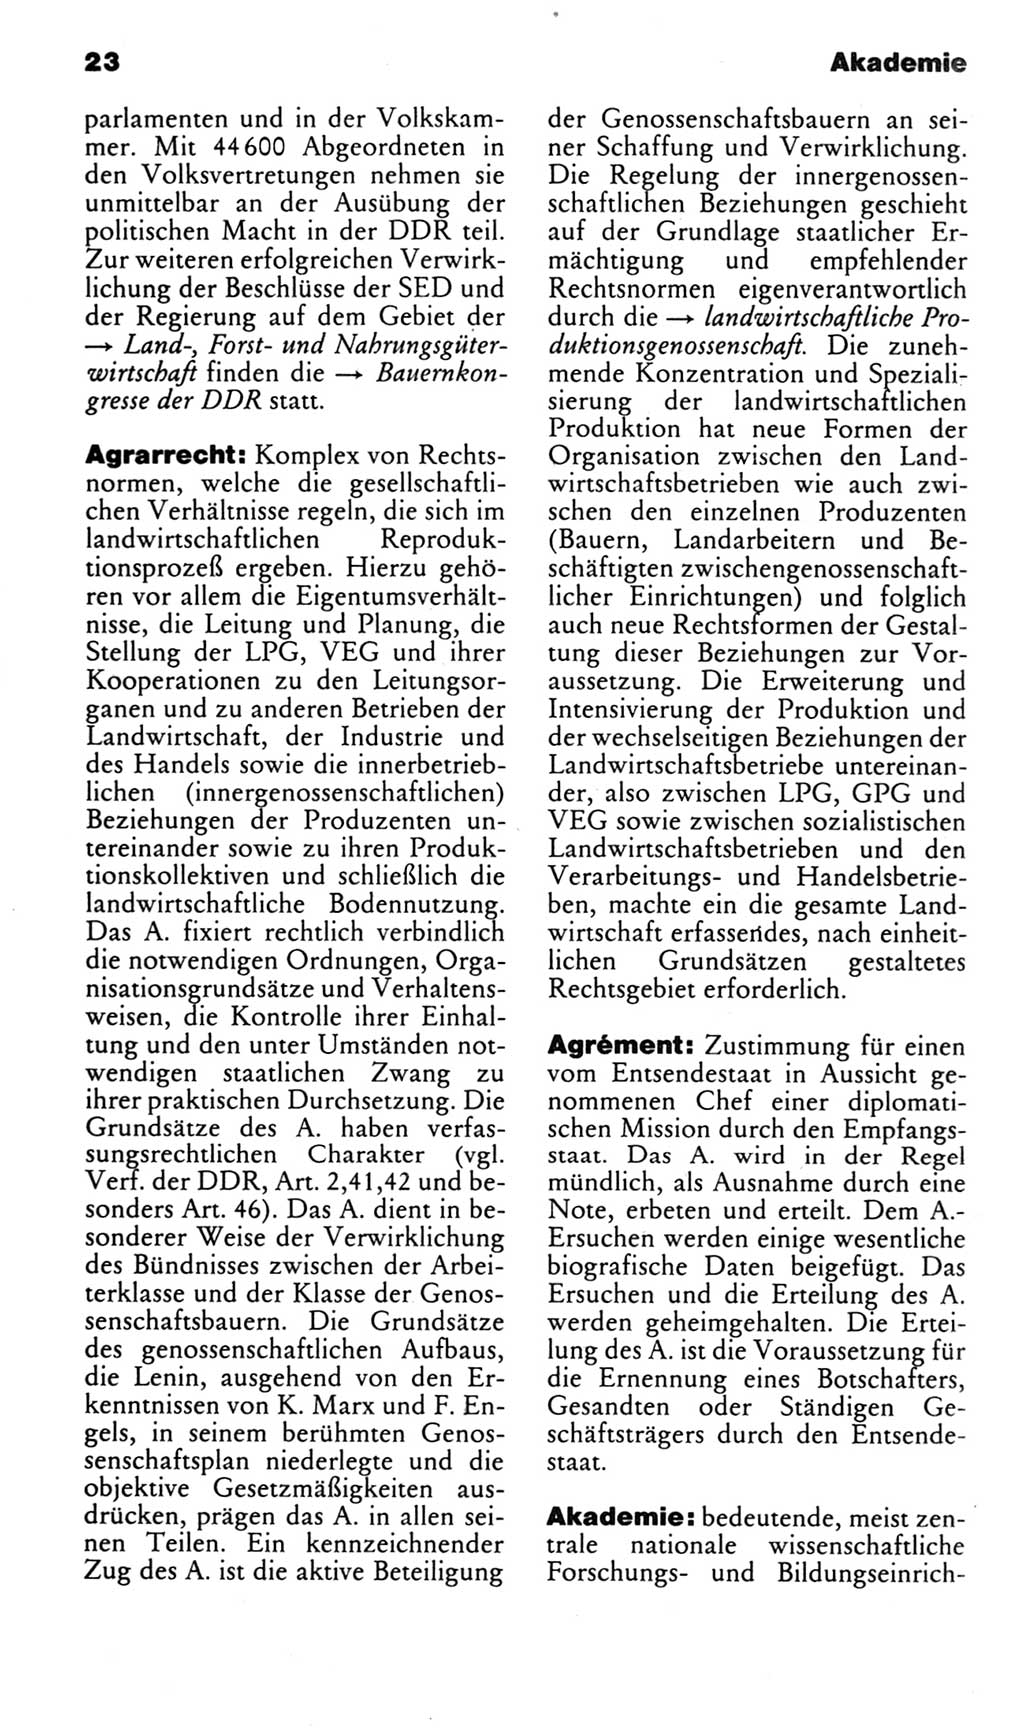 Kleines politisches Wörterbuch [Deutsche Demokratische Republik (DDR)] 1985, Seite 23 (Kl. pol. Wb. DDR 1985, S. 23)